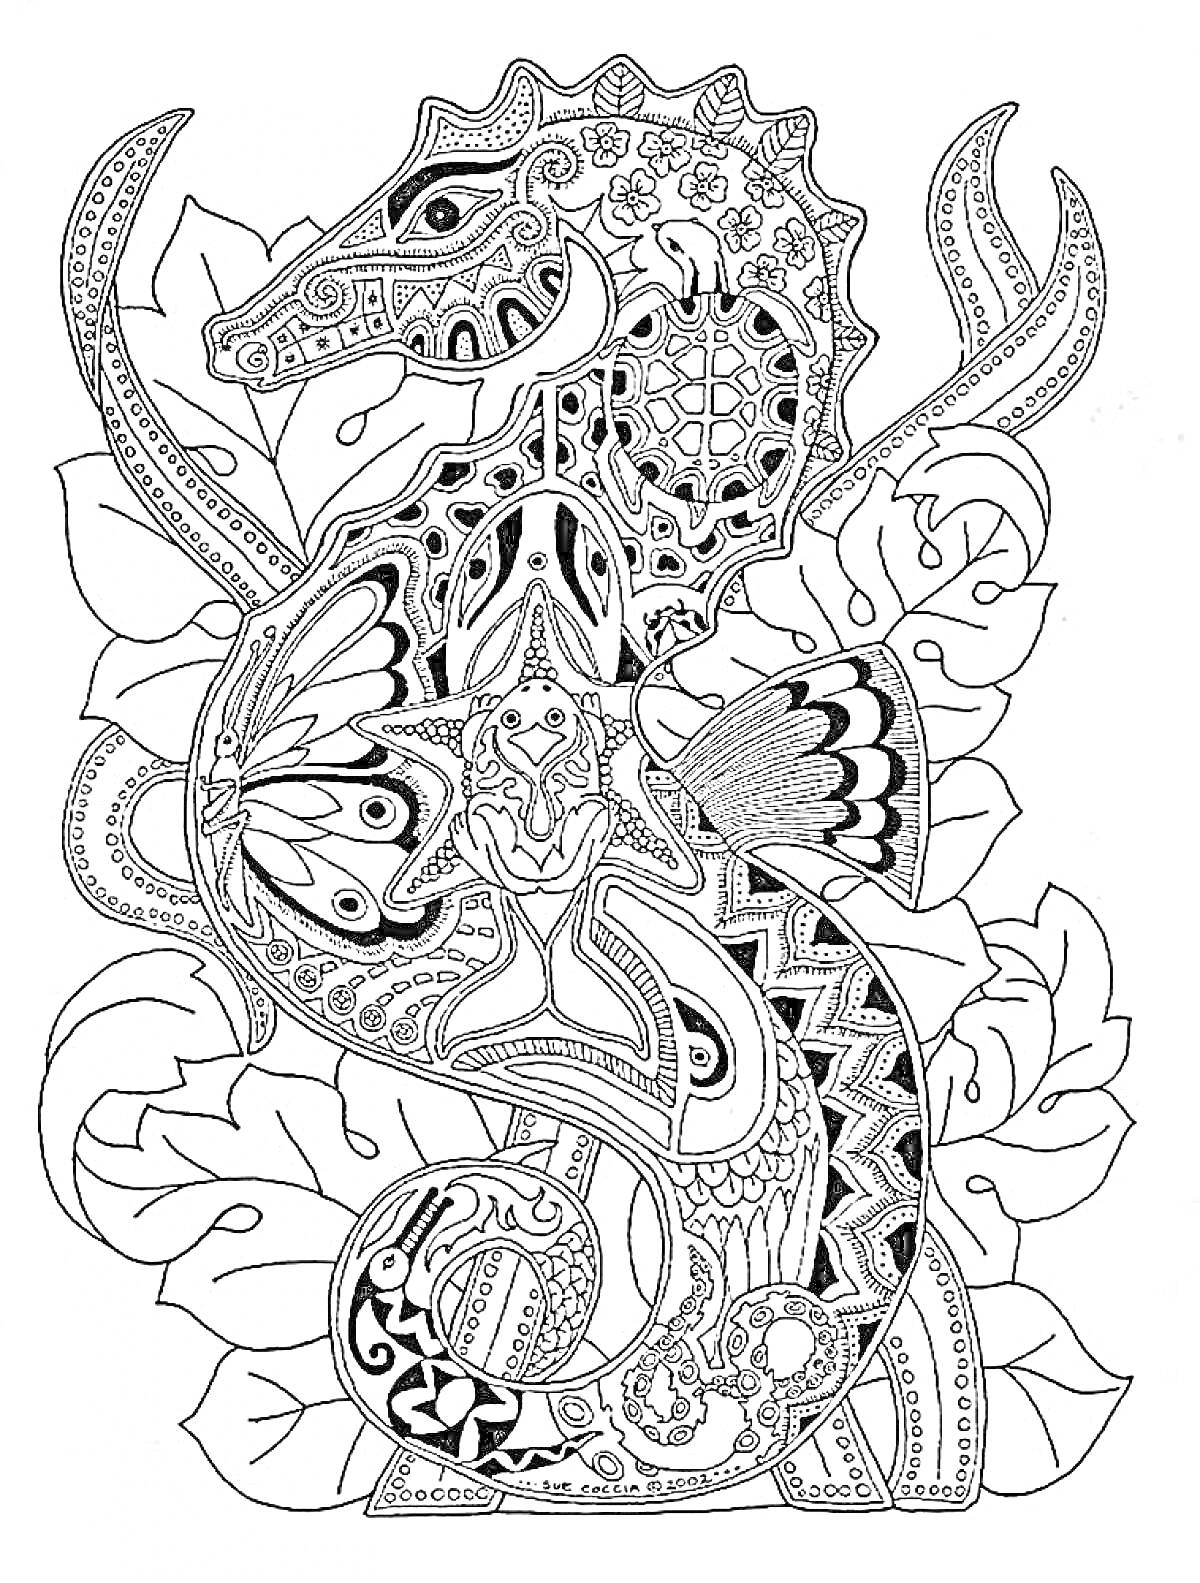 Раскраска Морской конёк со сложными узорами на фоне листьев